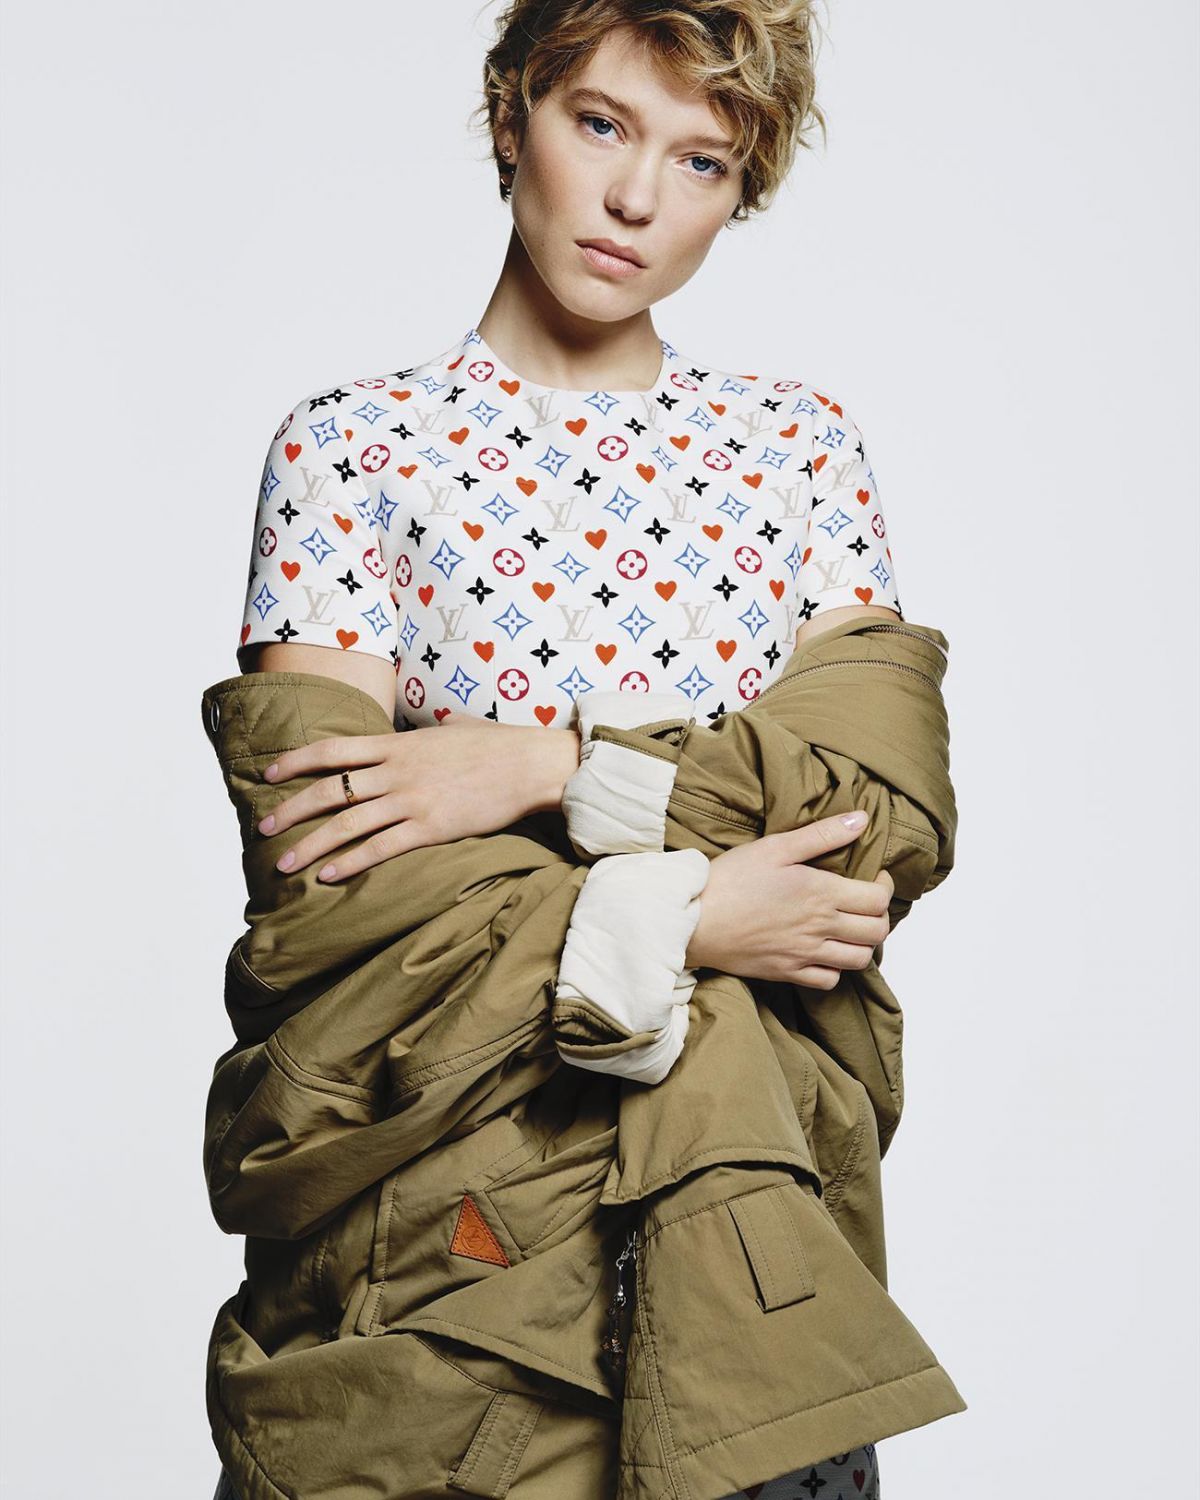 Emma-Stone-Lea-Seydoux-Alicia-Vikander-Louis-Vuitton -New-Classics-Ad-Campaign-Fashion-Accessories-Bags-Tom-Lorenzo-Site (5) -  Tom + Lorenzo